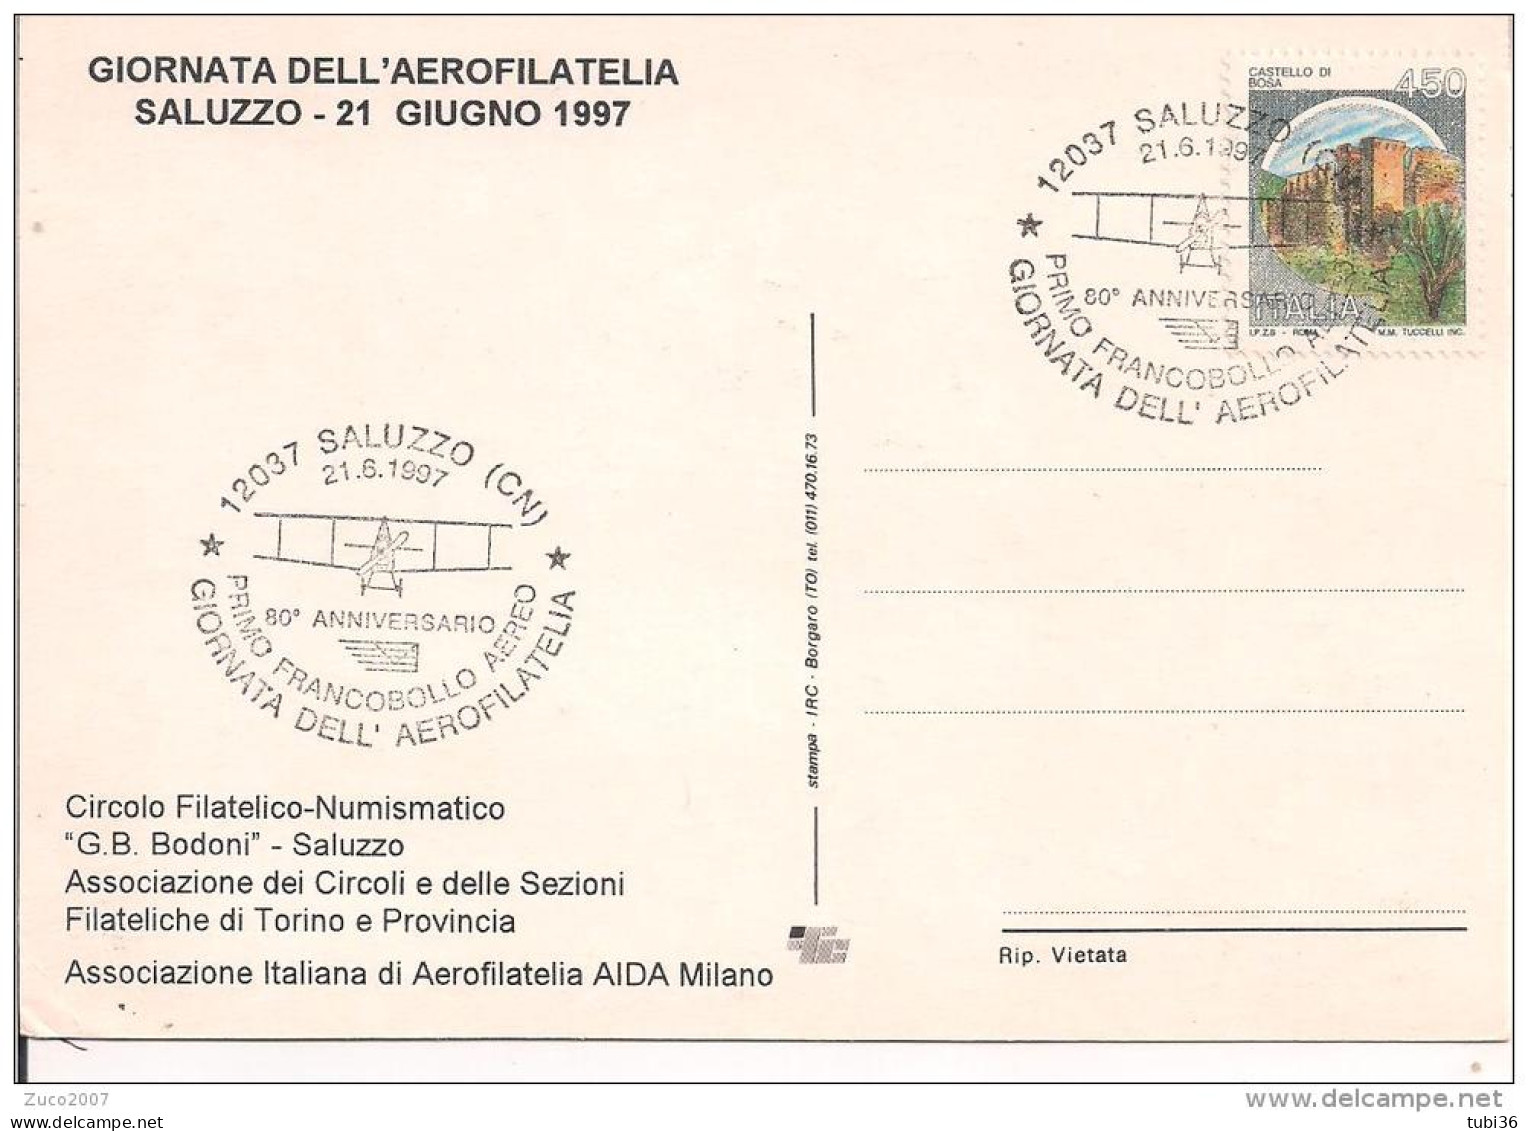 SALUZZO, GIORNATA DELL'AEROFILATELIA 1997, ANNULLO SPECIALE FIGURATO SU CARTOLINA DEDICATA, - Poste